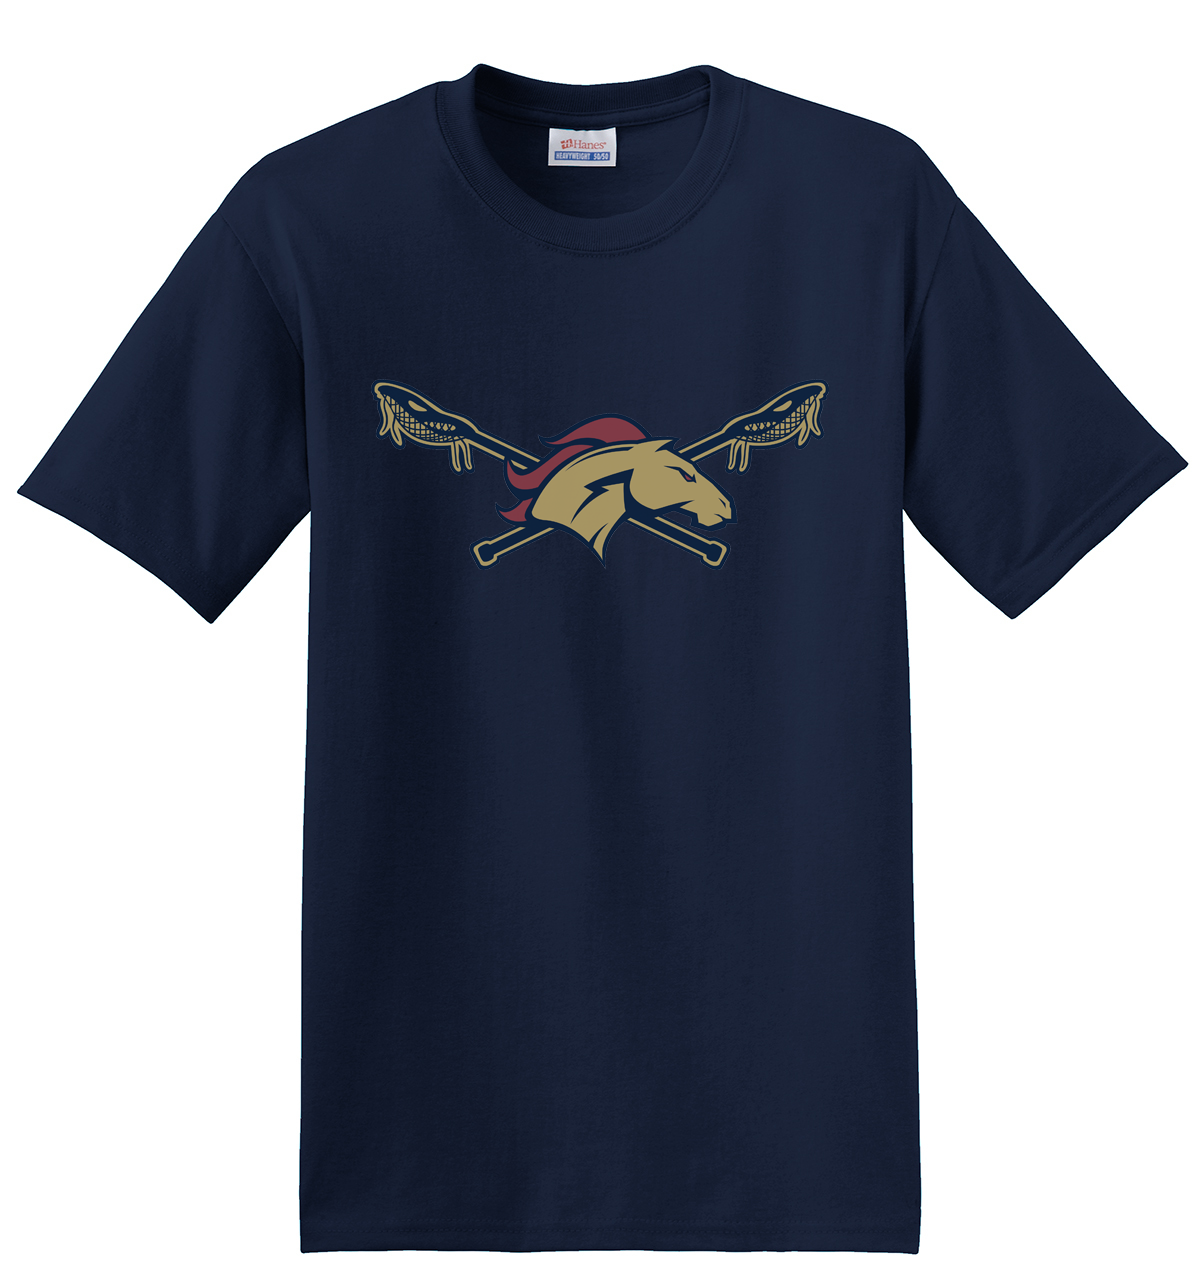 Herriman Lacrosse Navy T-Shirt